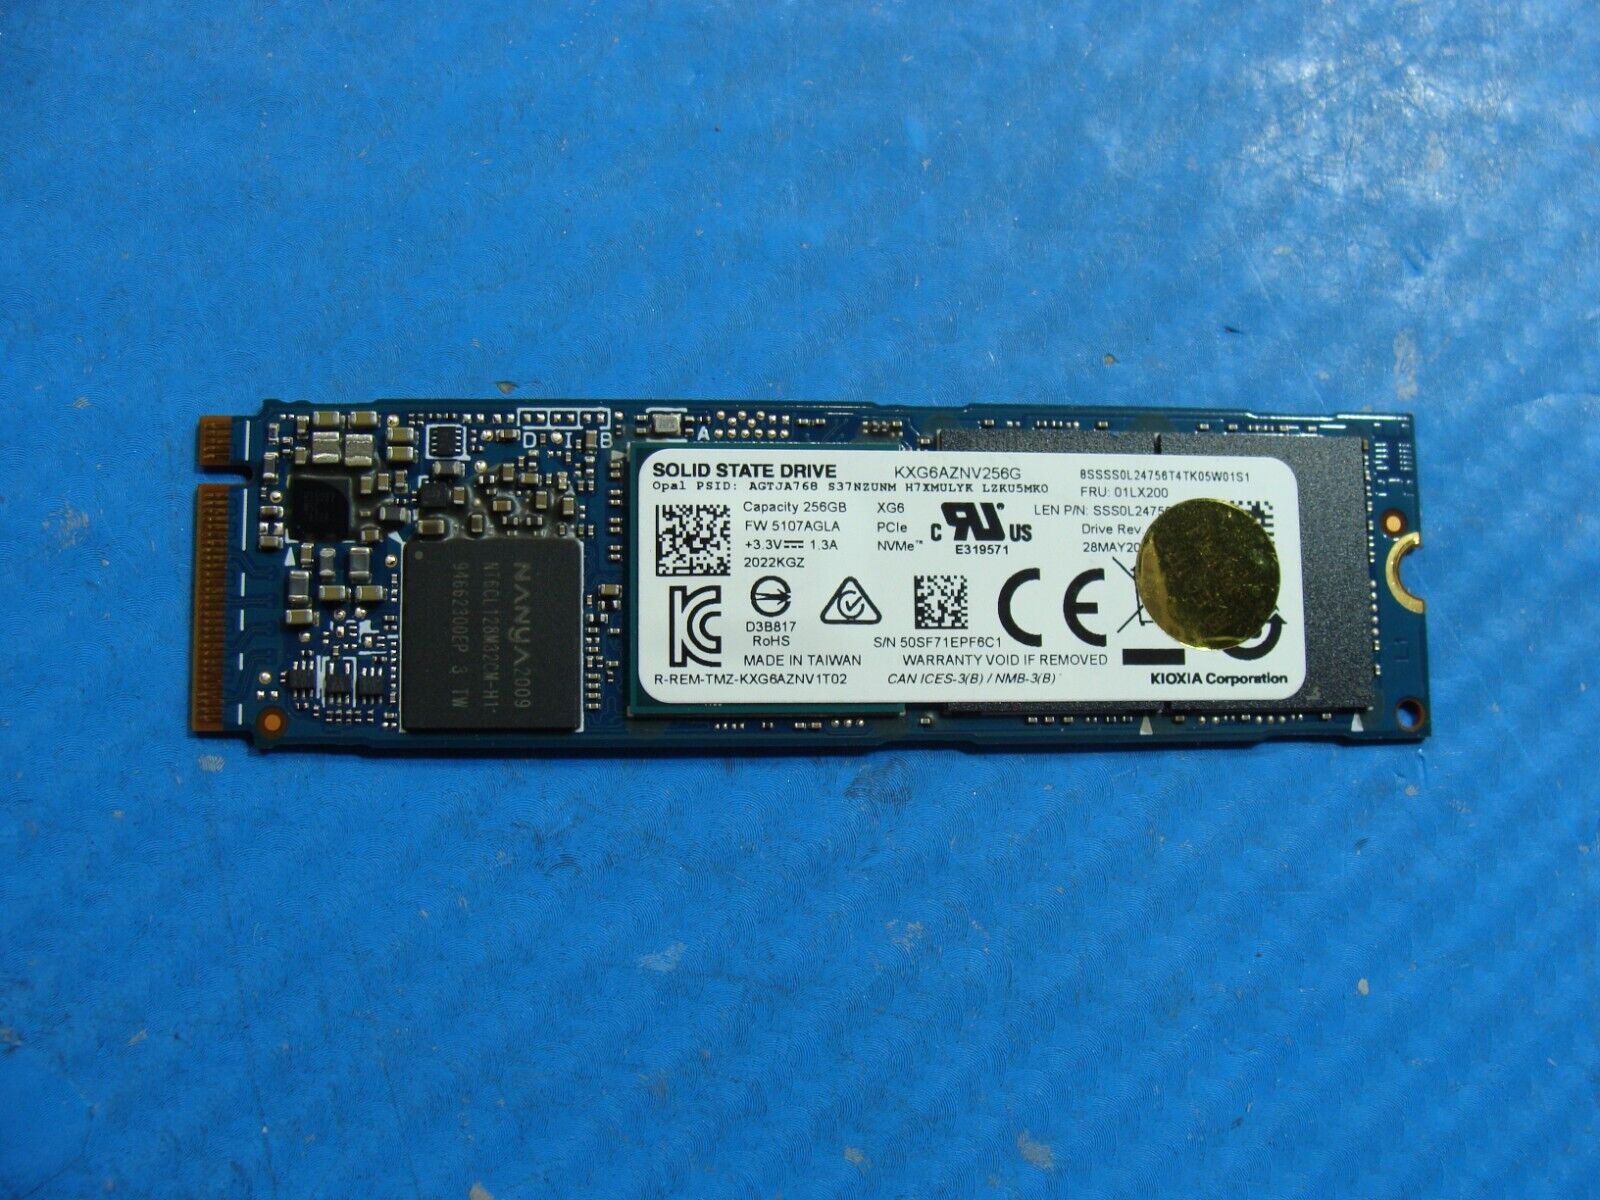 Lenovo L13 Yoga Kioxia 256GB NVMe M.2 SSD Solid State Drive KXG6AZNV256G 01LX200